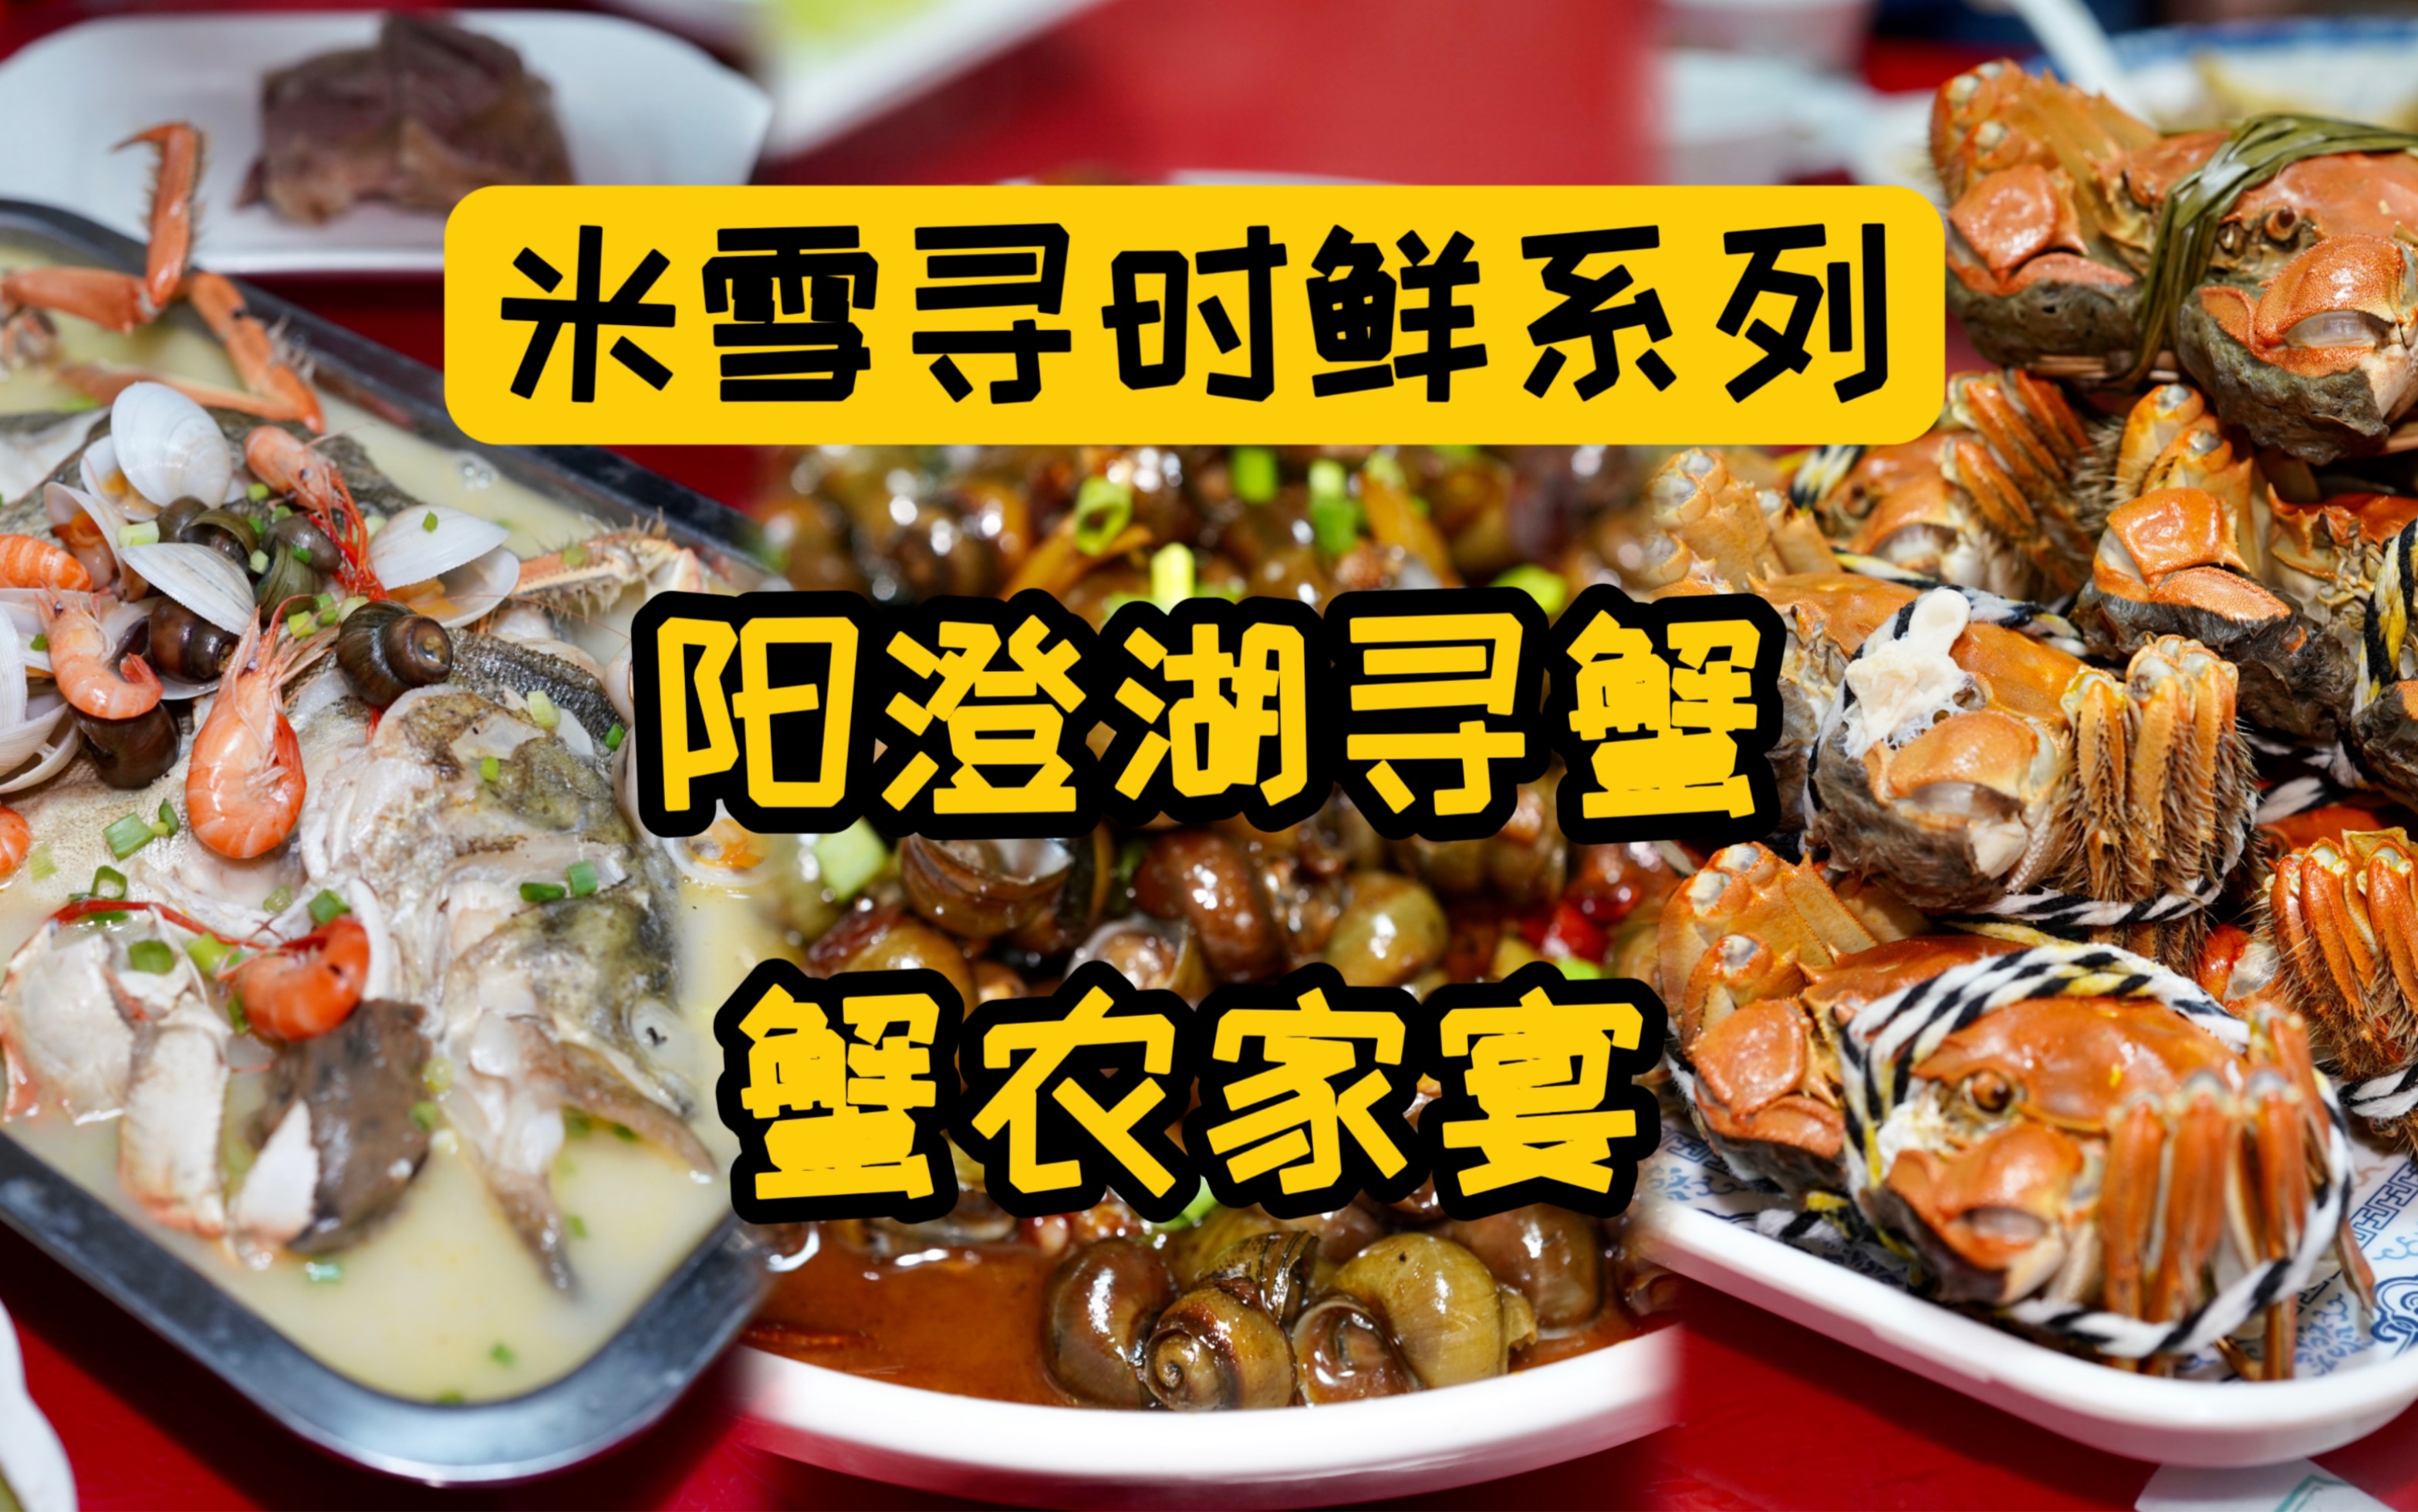 福建人在上海开的社区老店，熬了20年的老汤，卤个大肠是啥味道？-米雪食记-米雪食记-哔哩哔哩视频